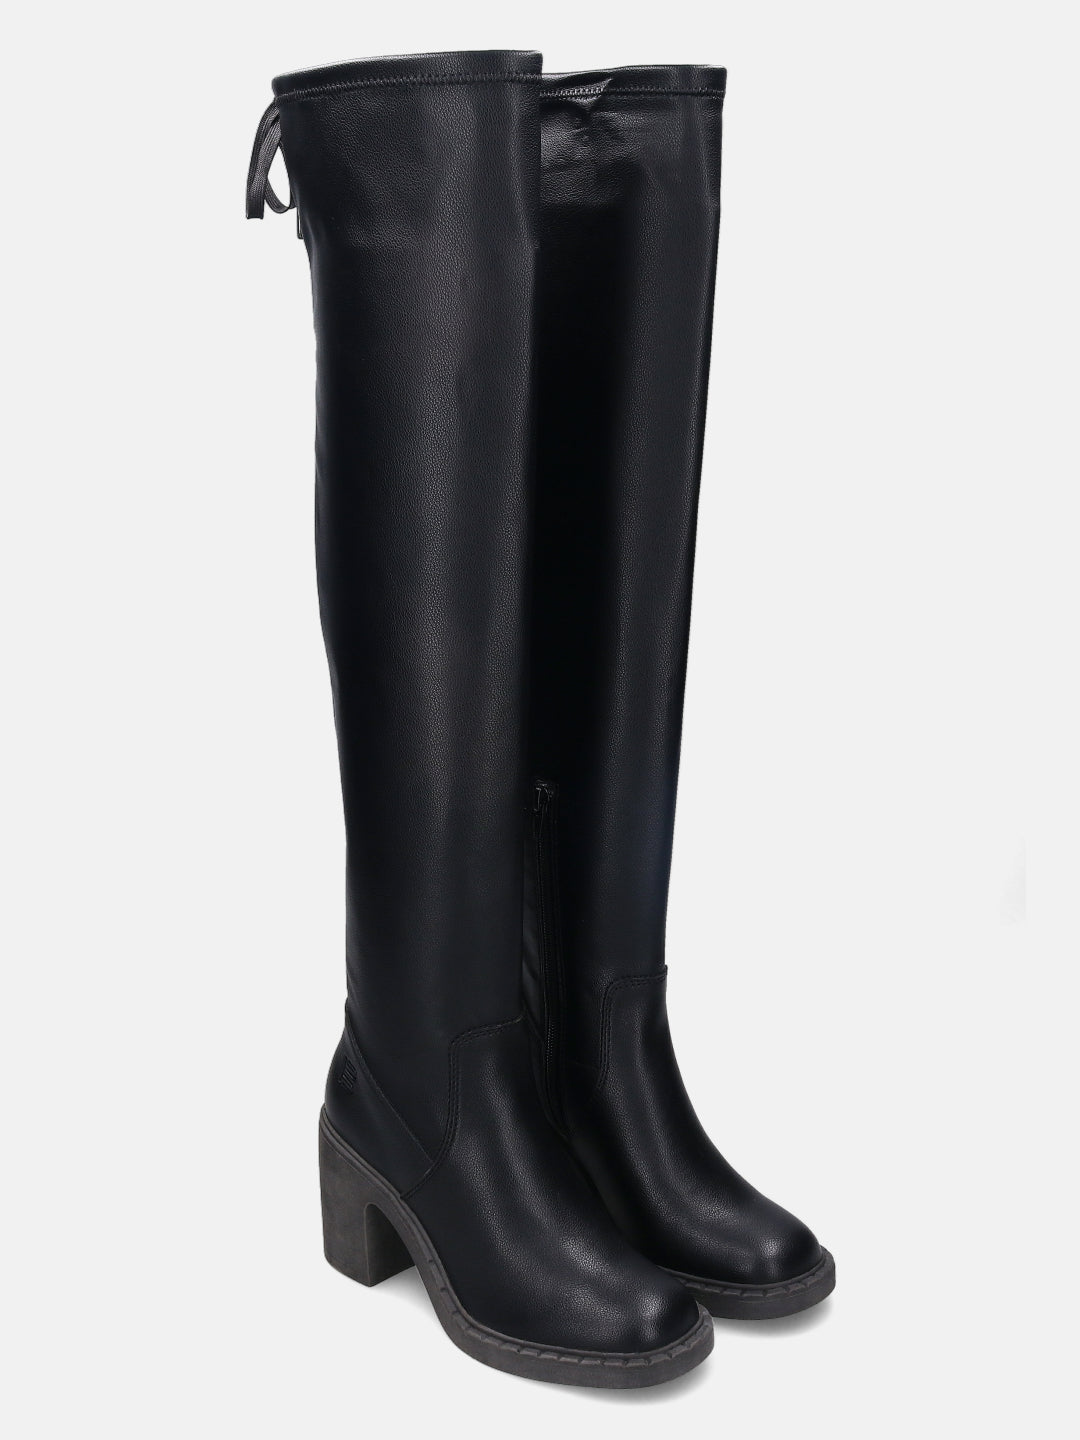 Malea Black Thigh-High Boots - BAGATT